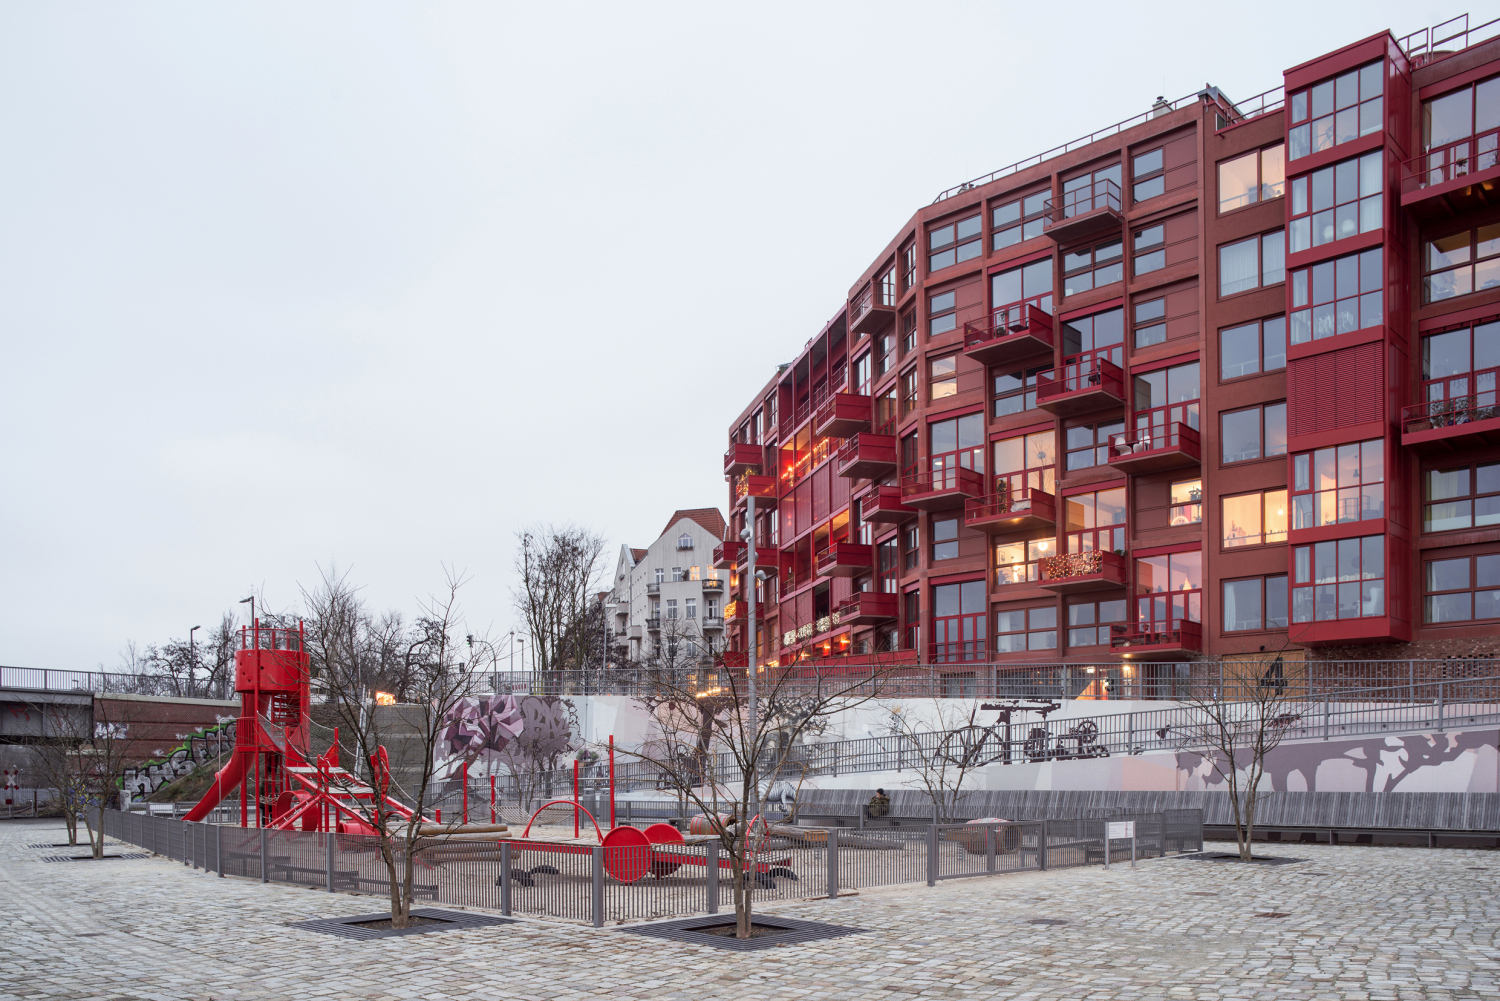 Preisträger*in Live | Work Spaces: Am Lokdepot - Architektur der Stadt, Robertneun™ Architekten